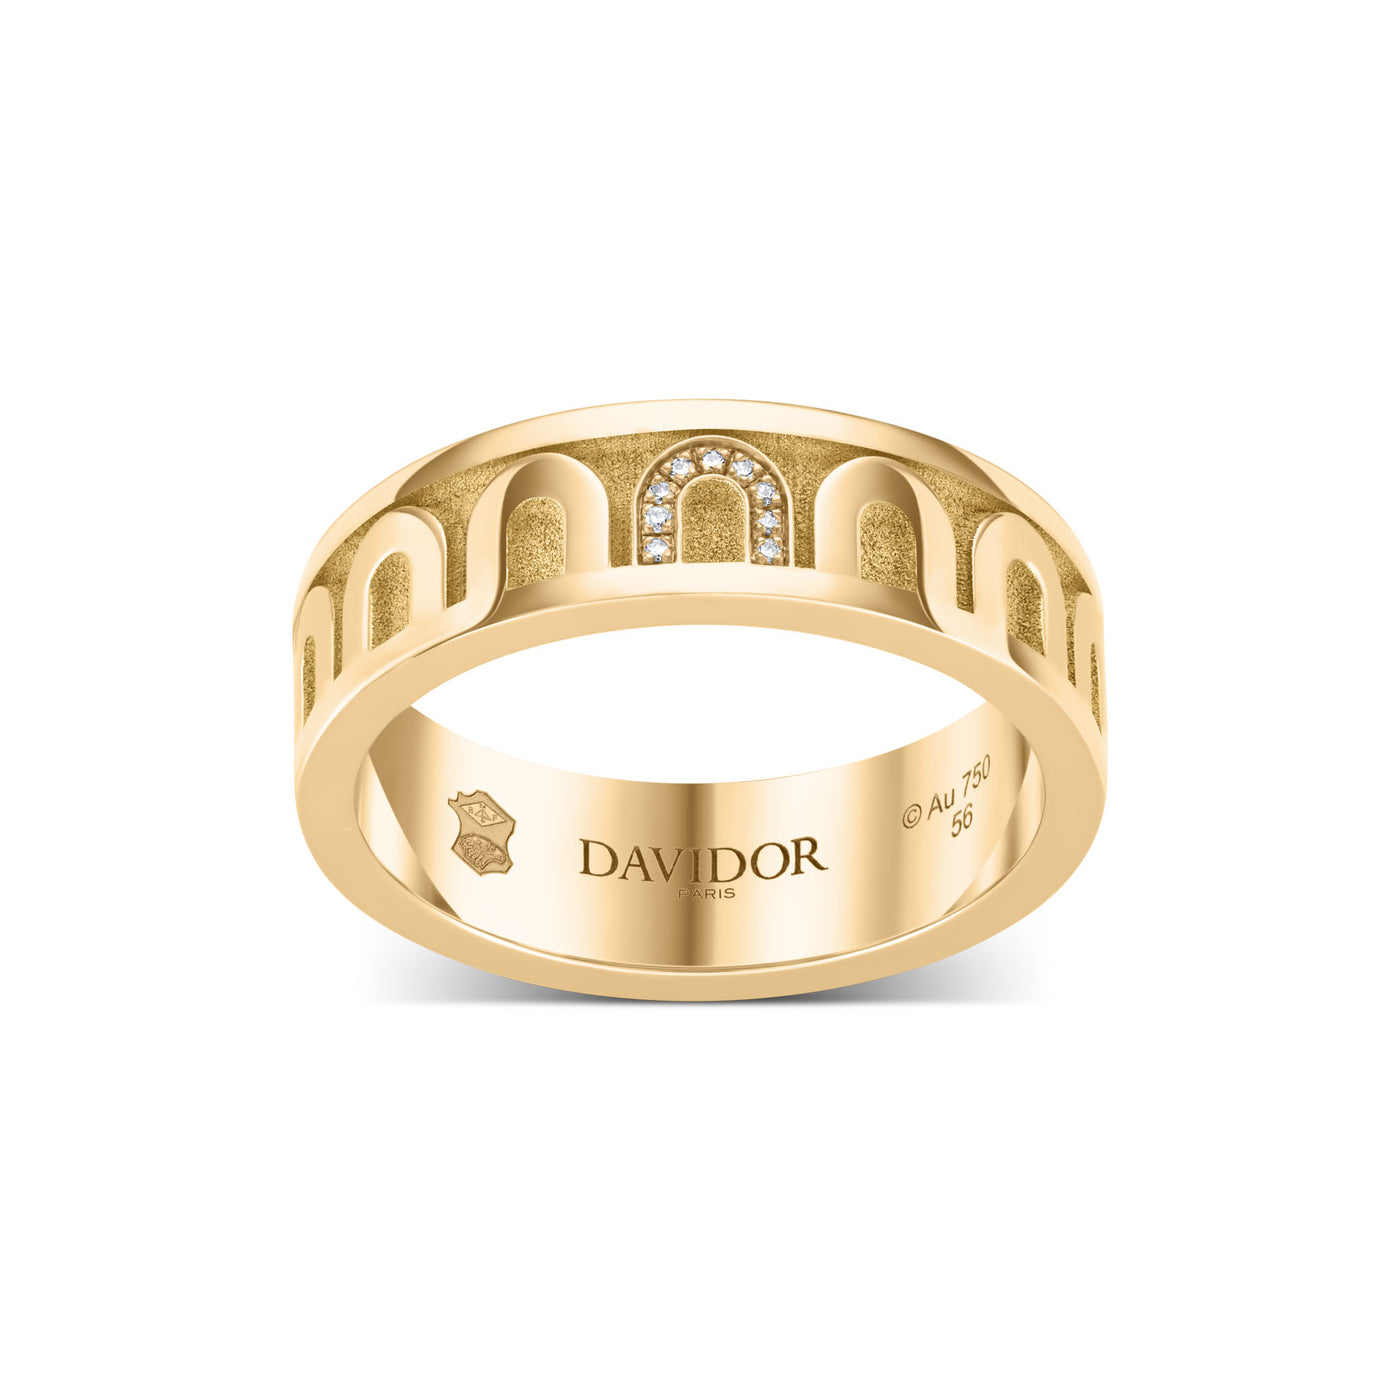 L’Arc de DAVIDOR Ring MM, 18k Yellow Gold with Satin Finish and Porta Simple Diamonds - DAVIDOR